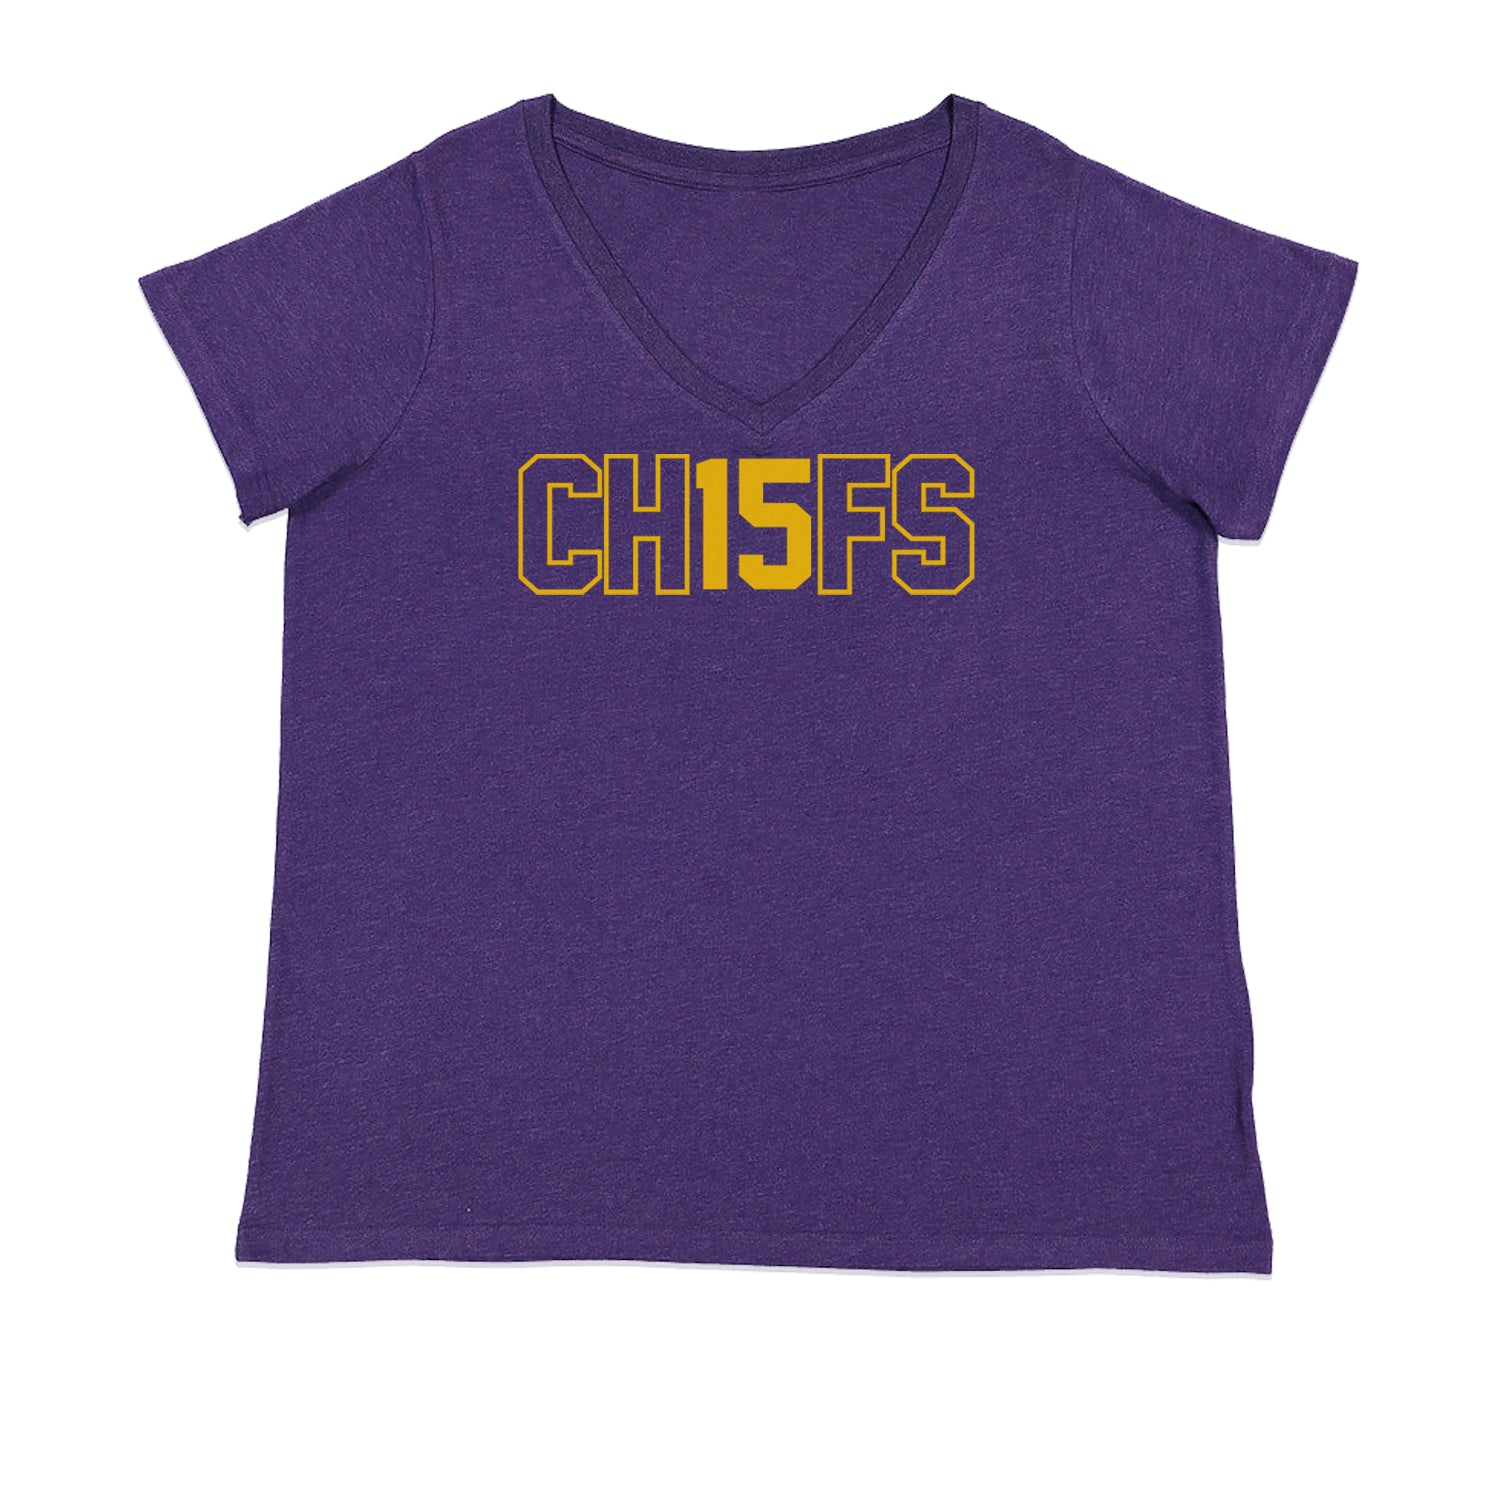 Ch15fs Chief 15 Shirt Ladies V-Neck T-shirt Purple